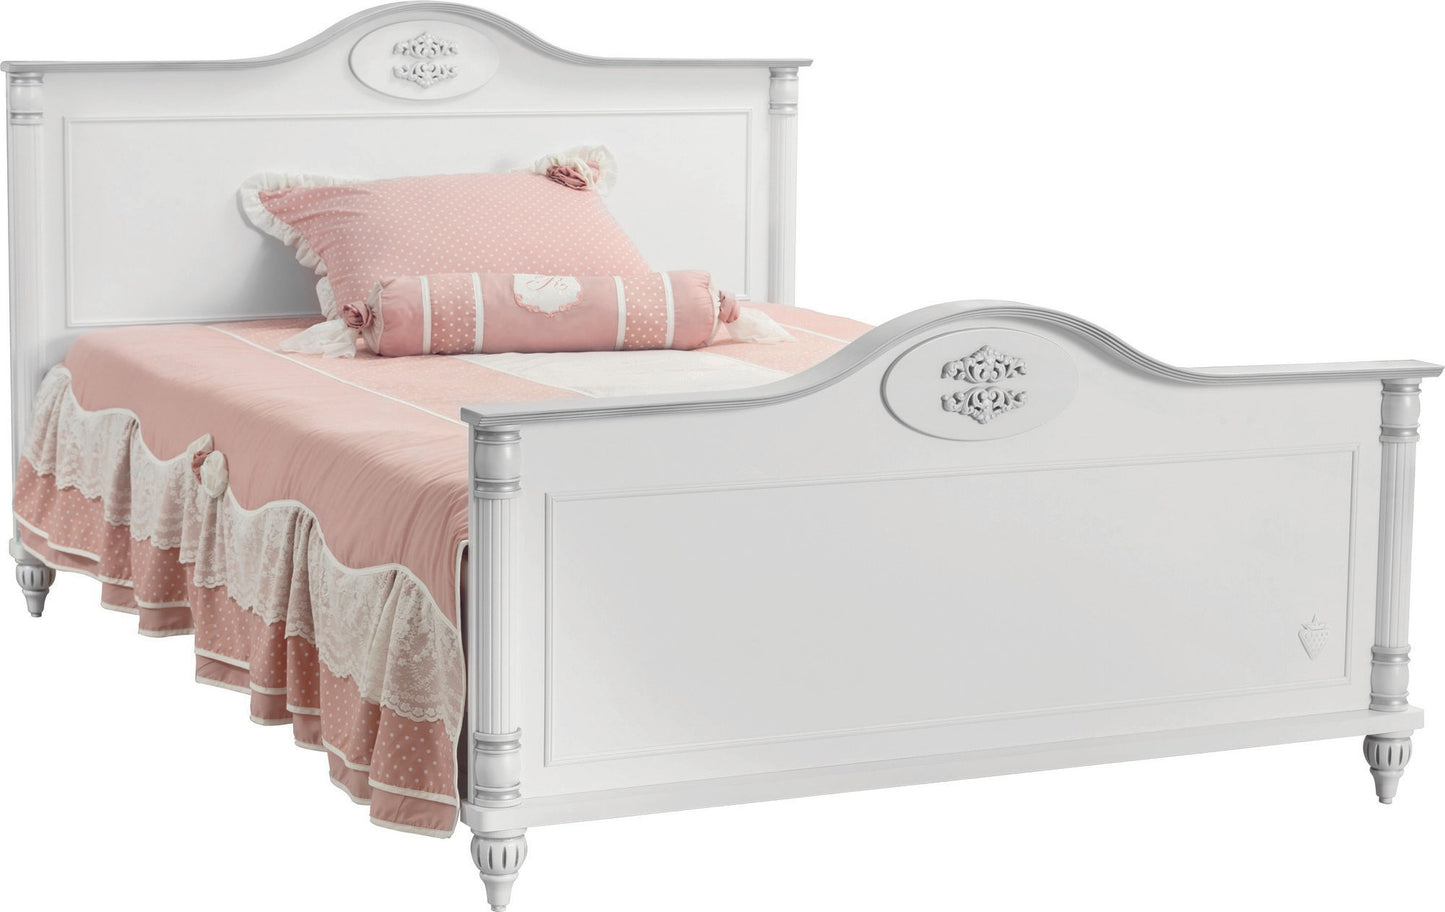 Romantisk seng (120X200) - Enkeltseng